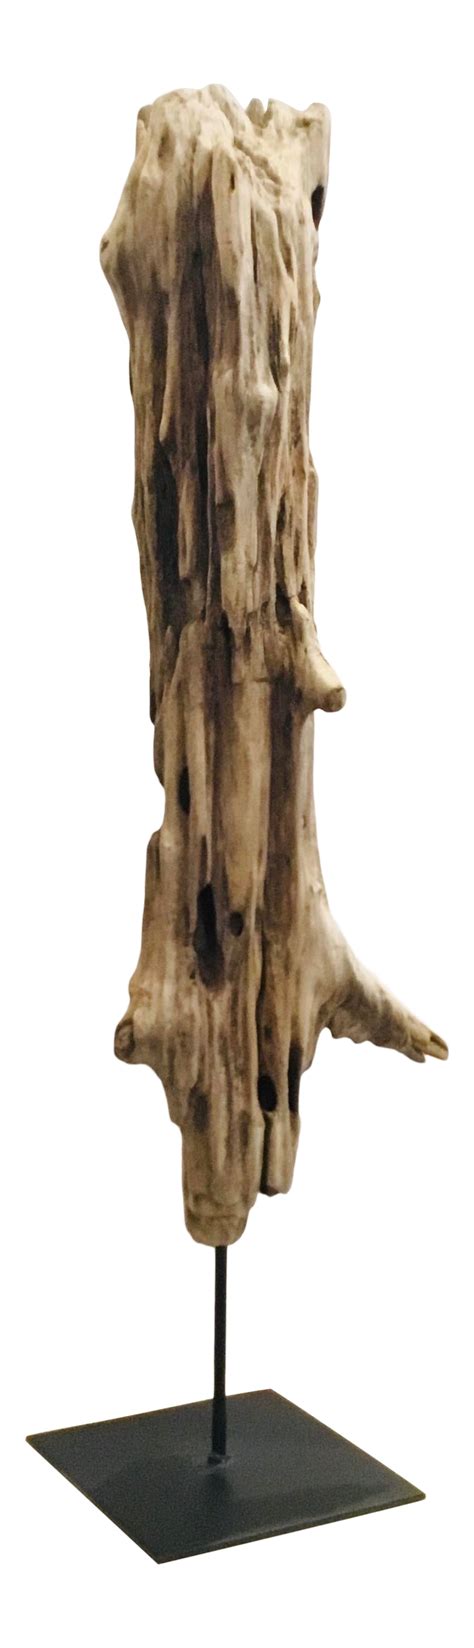 Driftwood Display Driftwood Sculpture Natural Driftwood Driftwood Art